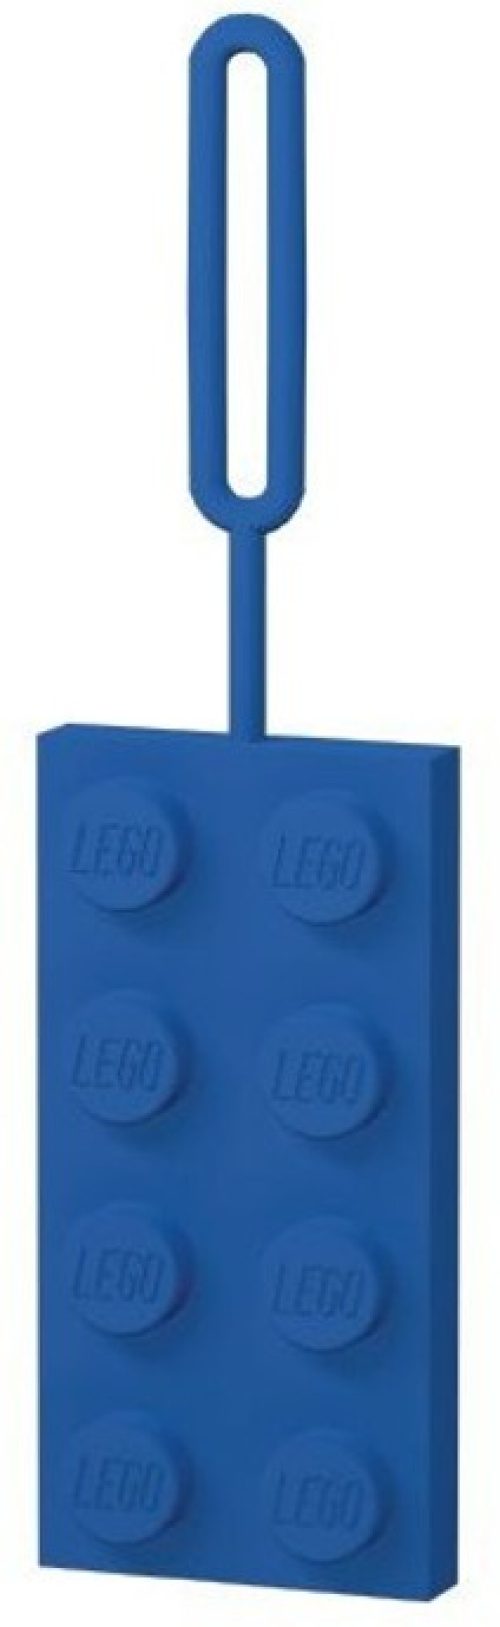 5005342-1 2x4 Blue Silicone Luggage Tag